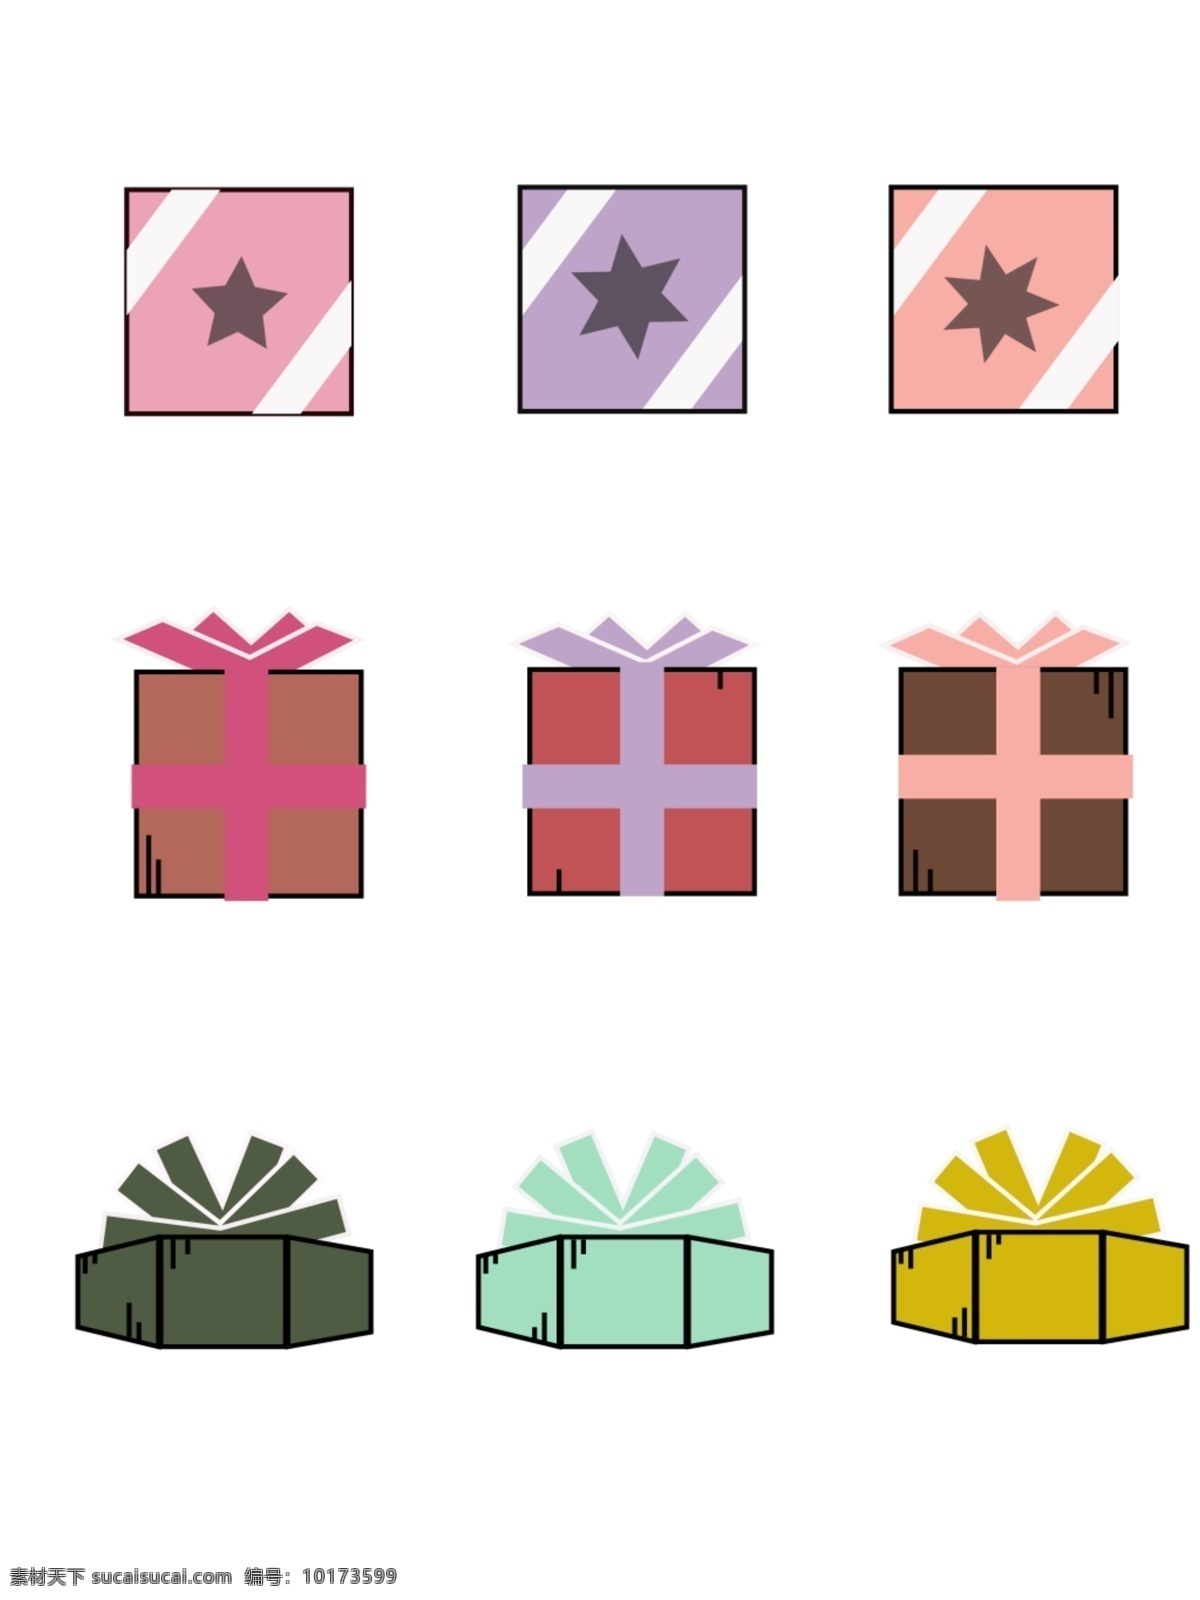 多种颜色 形式 礼物 图标 可商用 礼盒 蓝色 粉色 紫色 墨绿 橙红